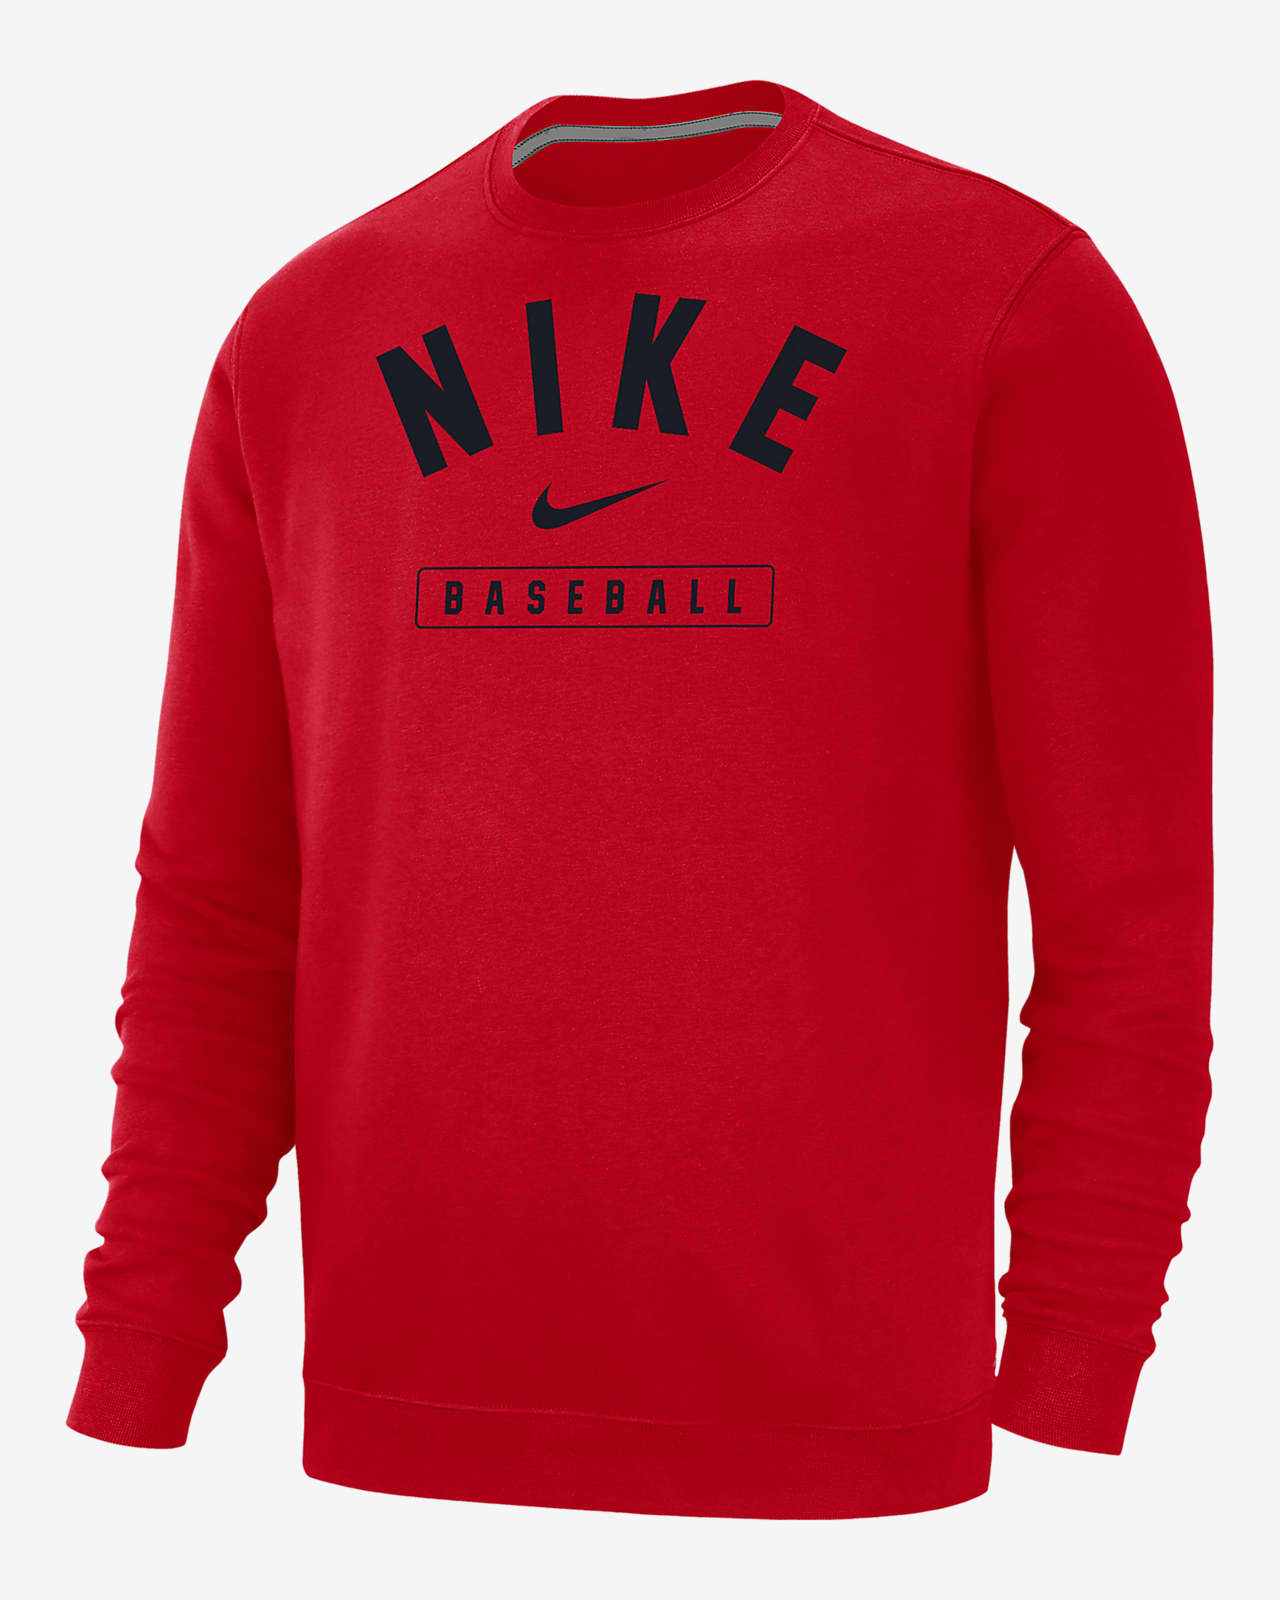 Nike Baseball Men's Crew-Neck Sweatshirt